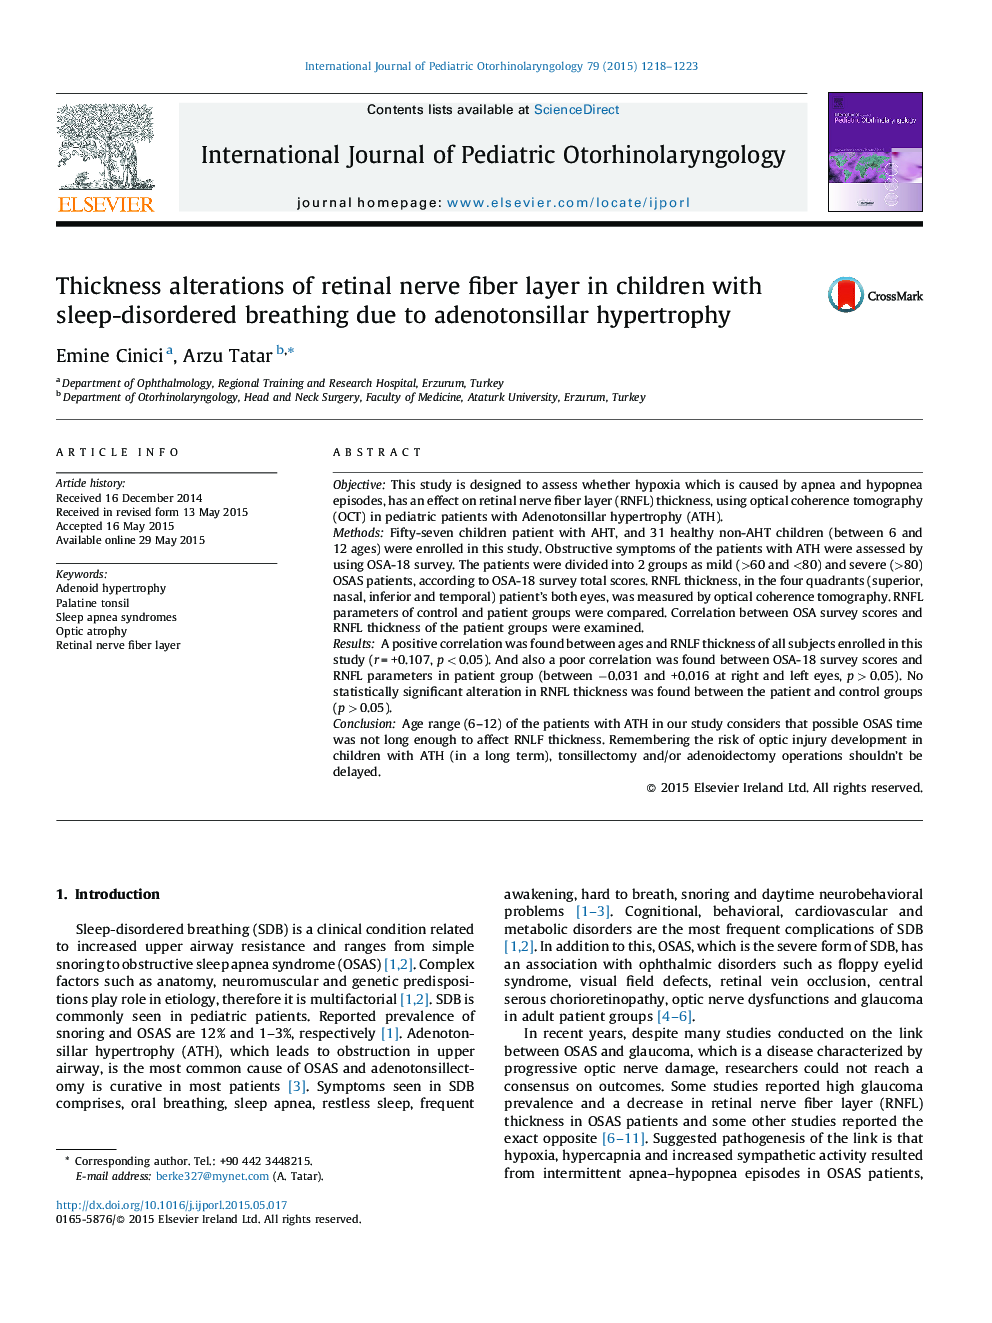 تغییرات ضخامت لایه الیاف عصبی شبکیه در کودکان مبتلا به تنفس اختلال خواب ناشی از هیپرتروفی آدنوتانسیلار 